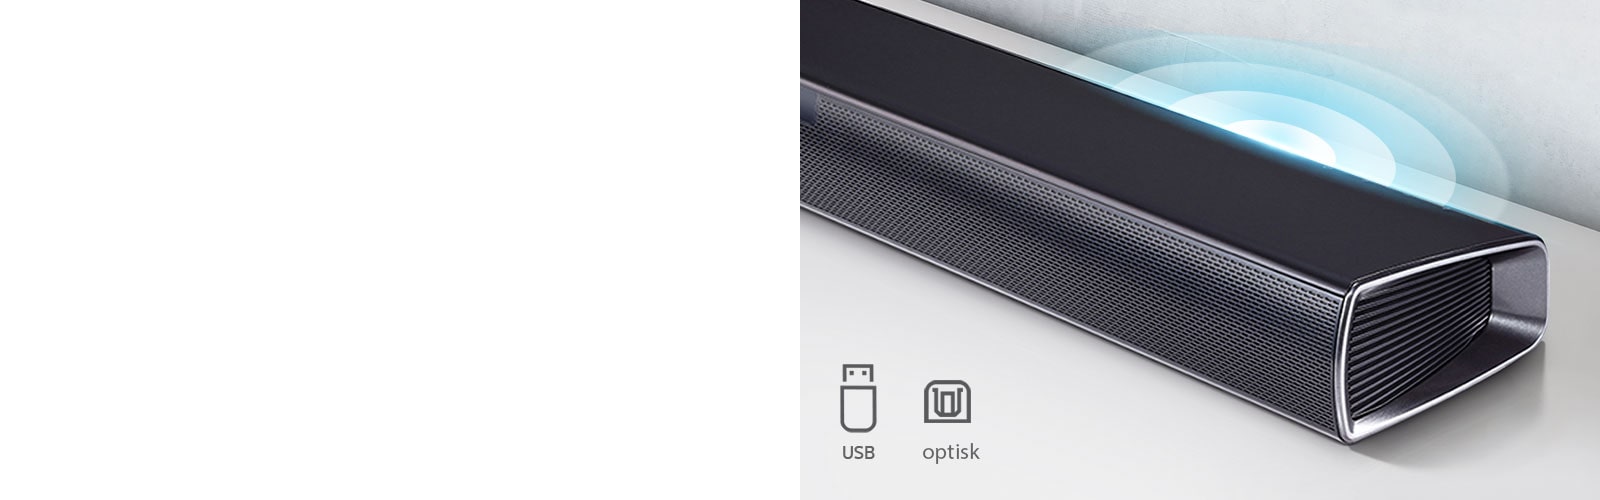 LG-lydplanken står på den hvite hyllen. Lyd-grafikken som kommer ut fra høyttaleren. Den viser USB, optiske ikoner.